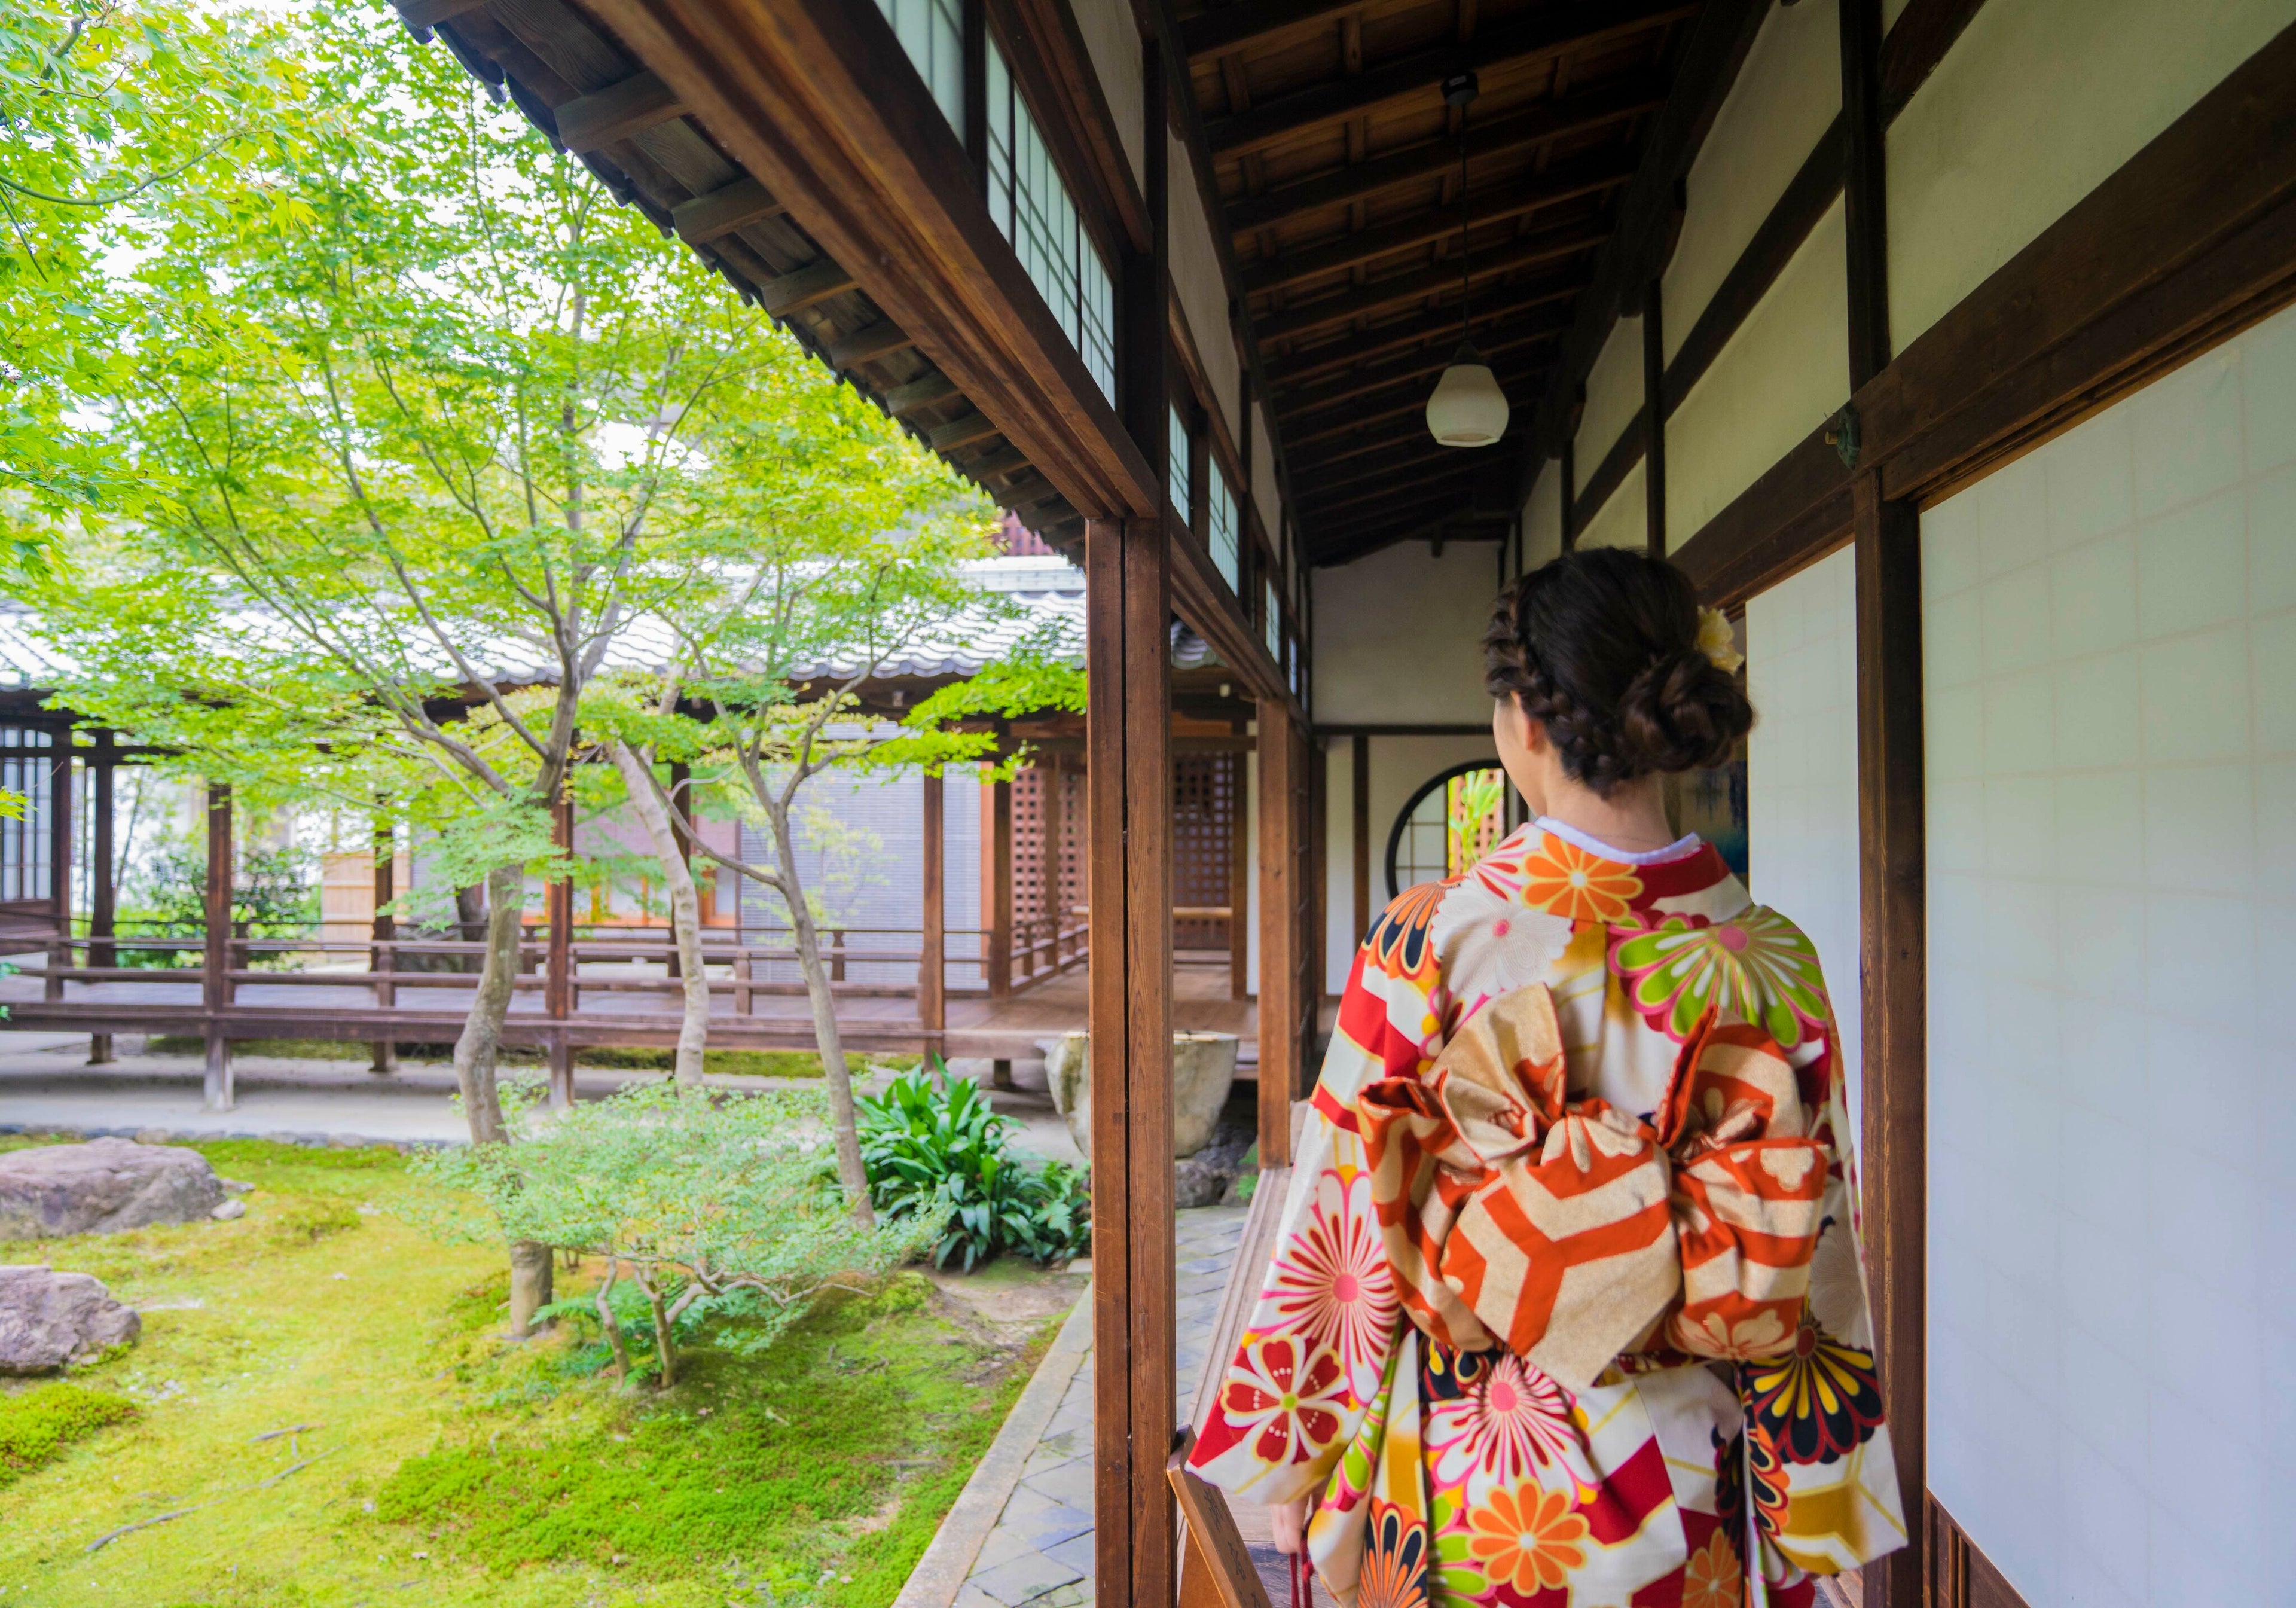 着物を着た女性が日本庭園を散歩している画像。色鮮やかな着物を身にまとい、風情ある日本庭園の小道を歩いています。古くから受け継がれてきた日本の伝統美が感じられる一枚です。